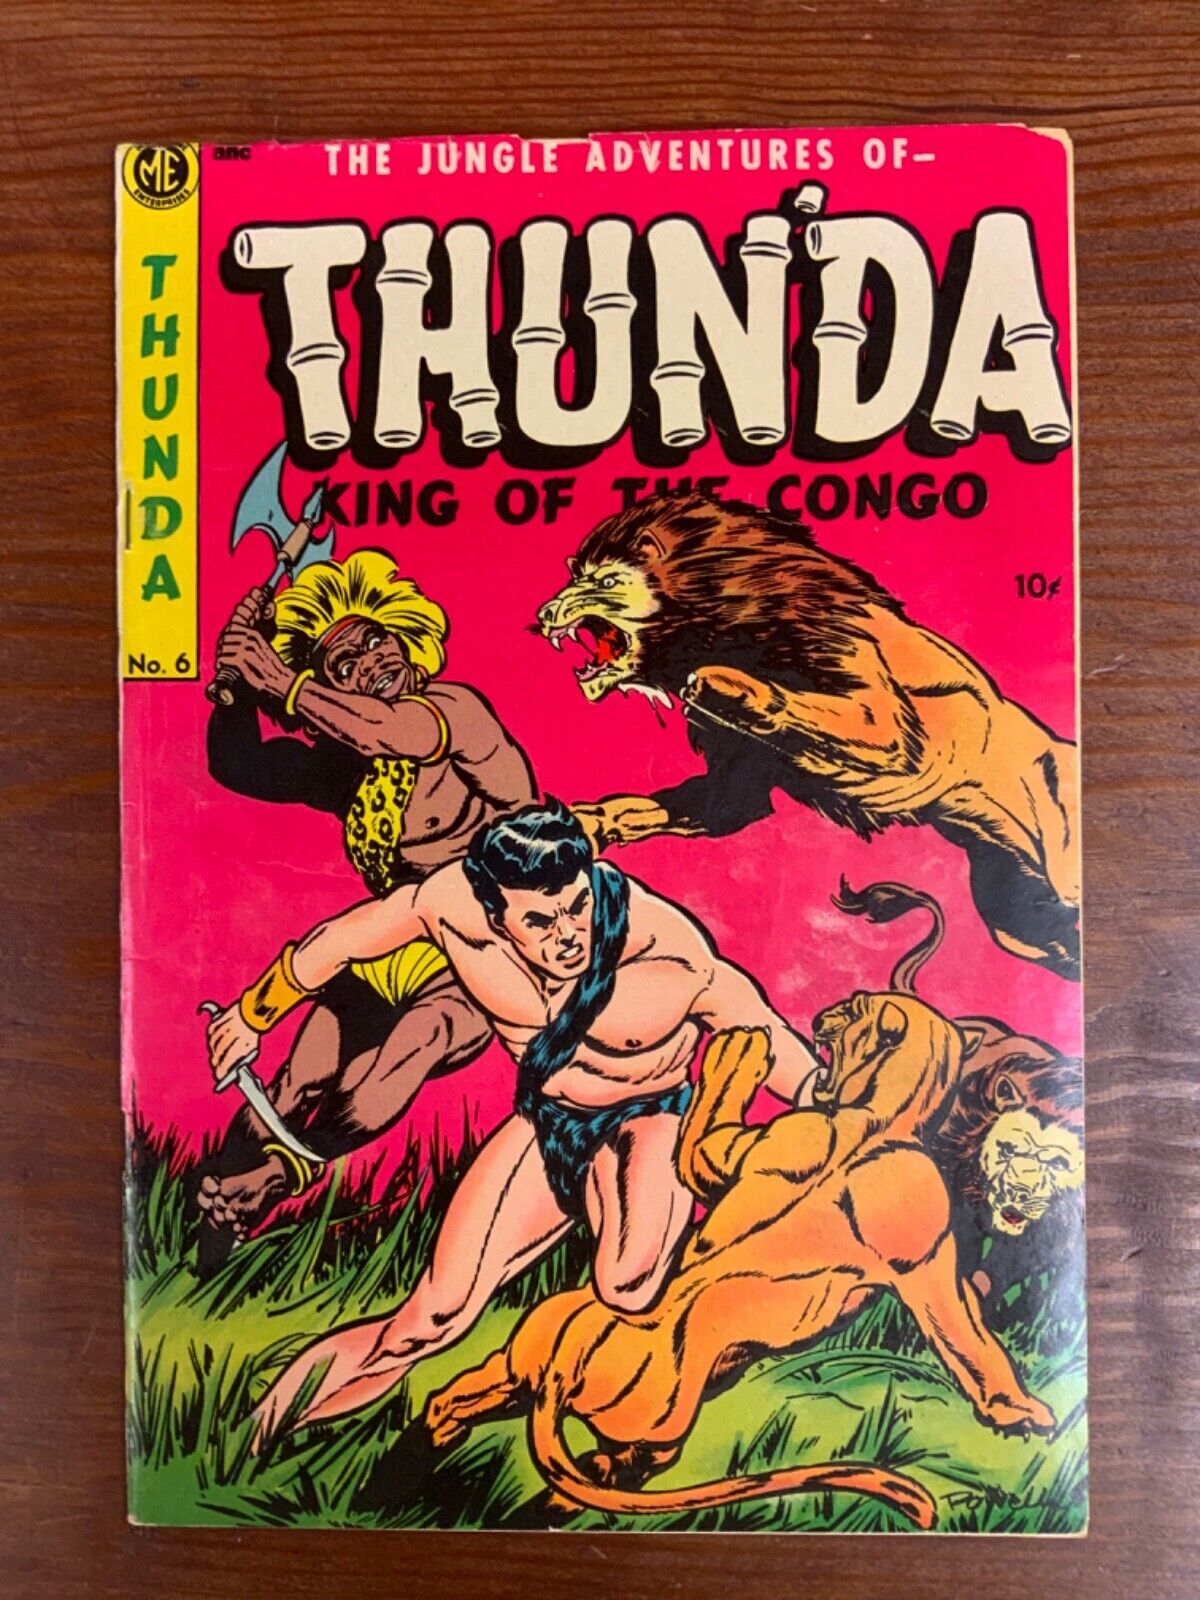 Thun'da King of the Congo #6 1953 VG 5.0 (ME) Bob Powell Cover NICE PINK COVER